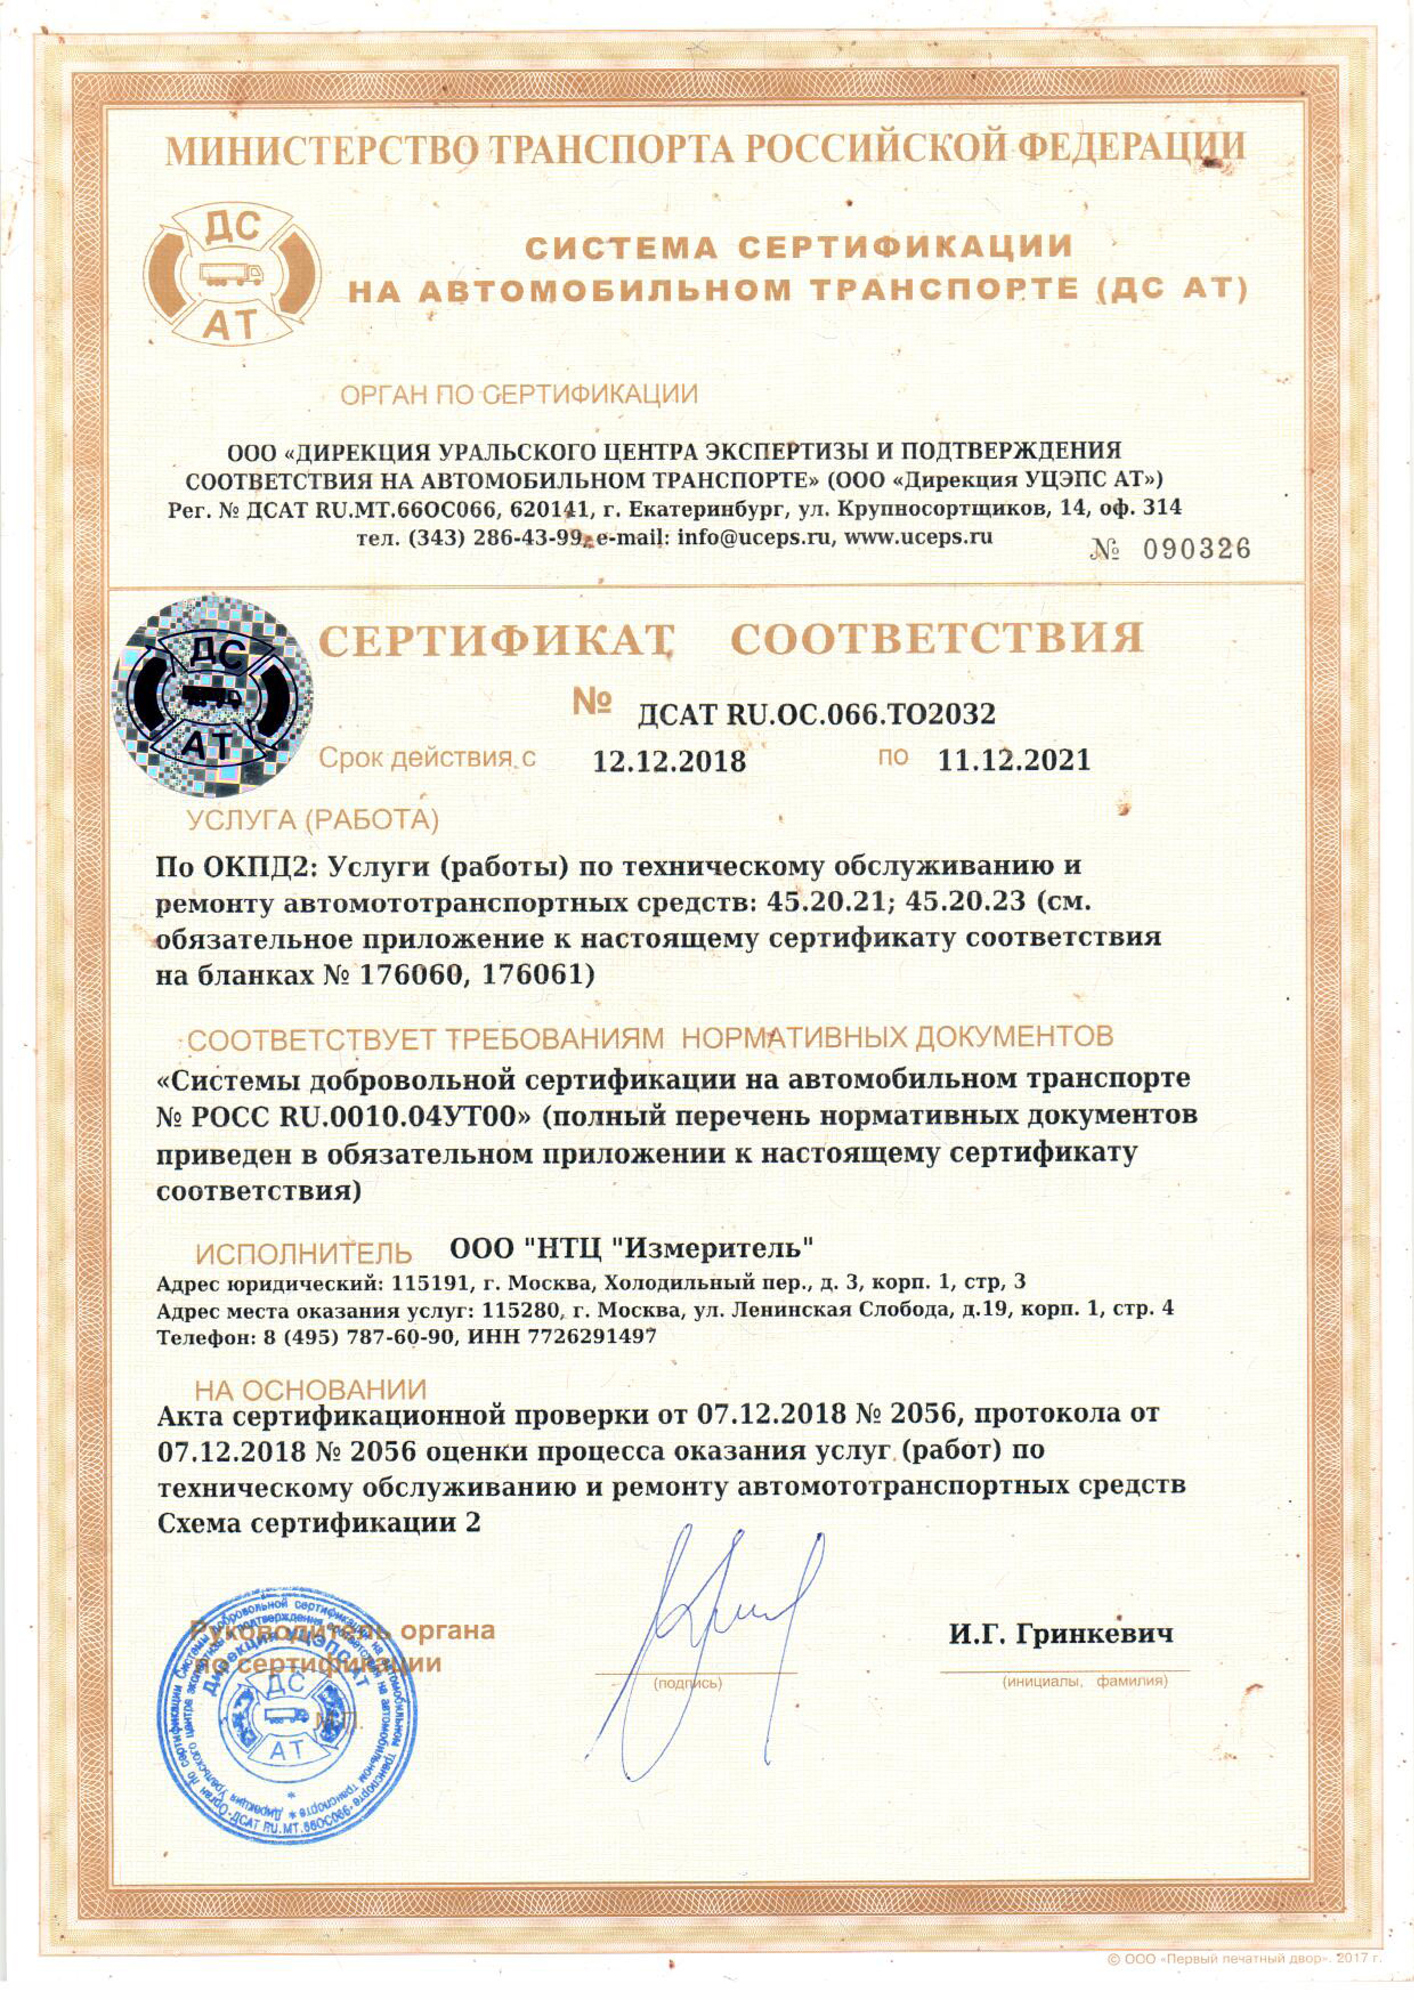 Сертификат соответствия техническому обслуживанию и ремонту транспортных средств, машин и оборудования